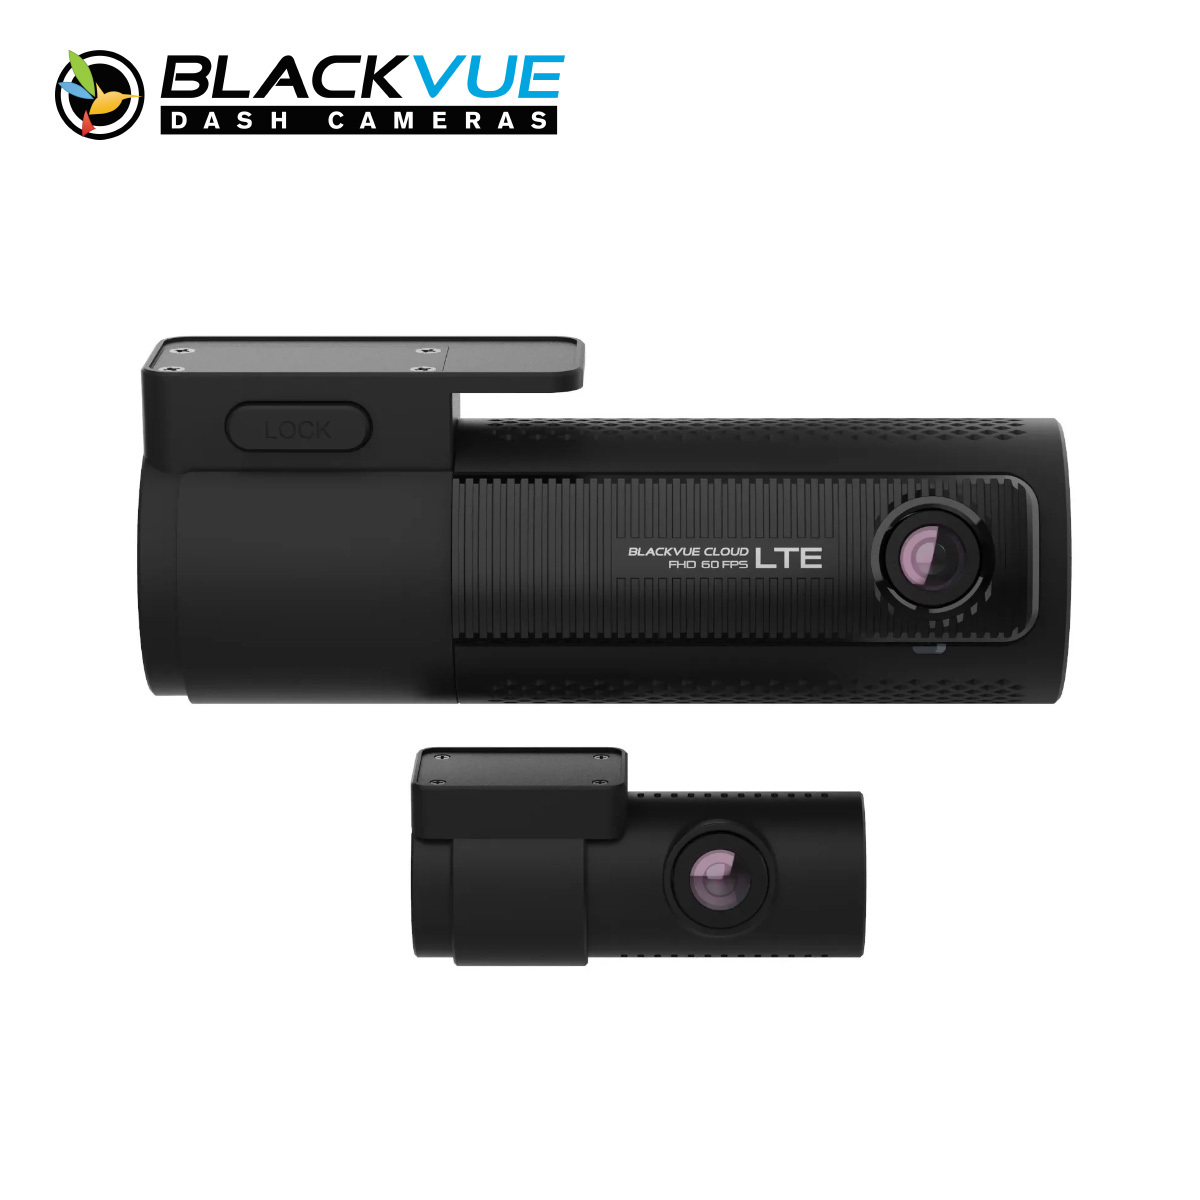 blackvue dr770 LTE product-1